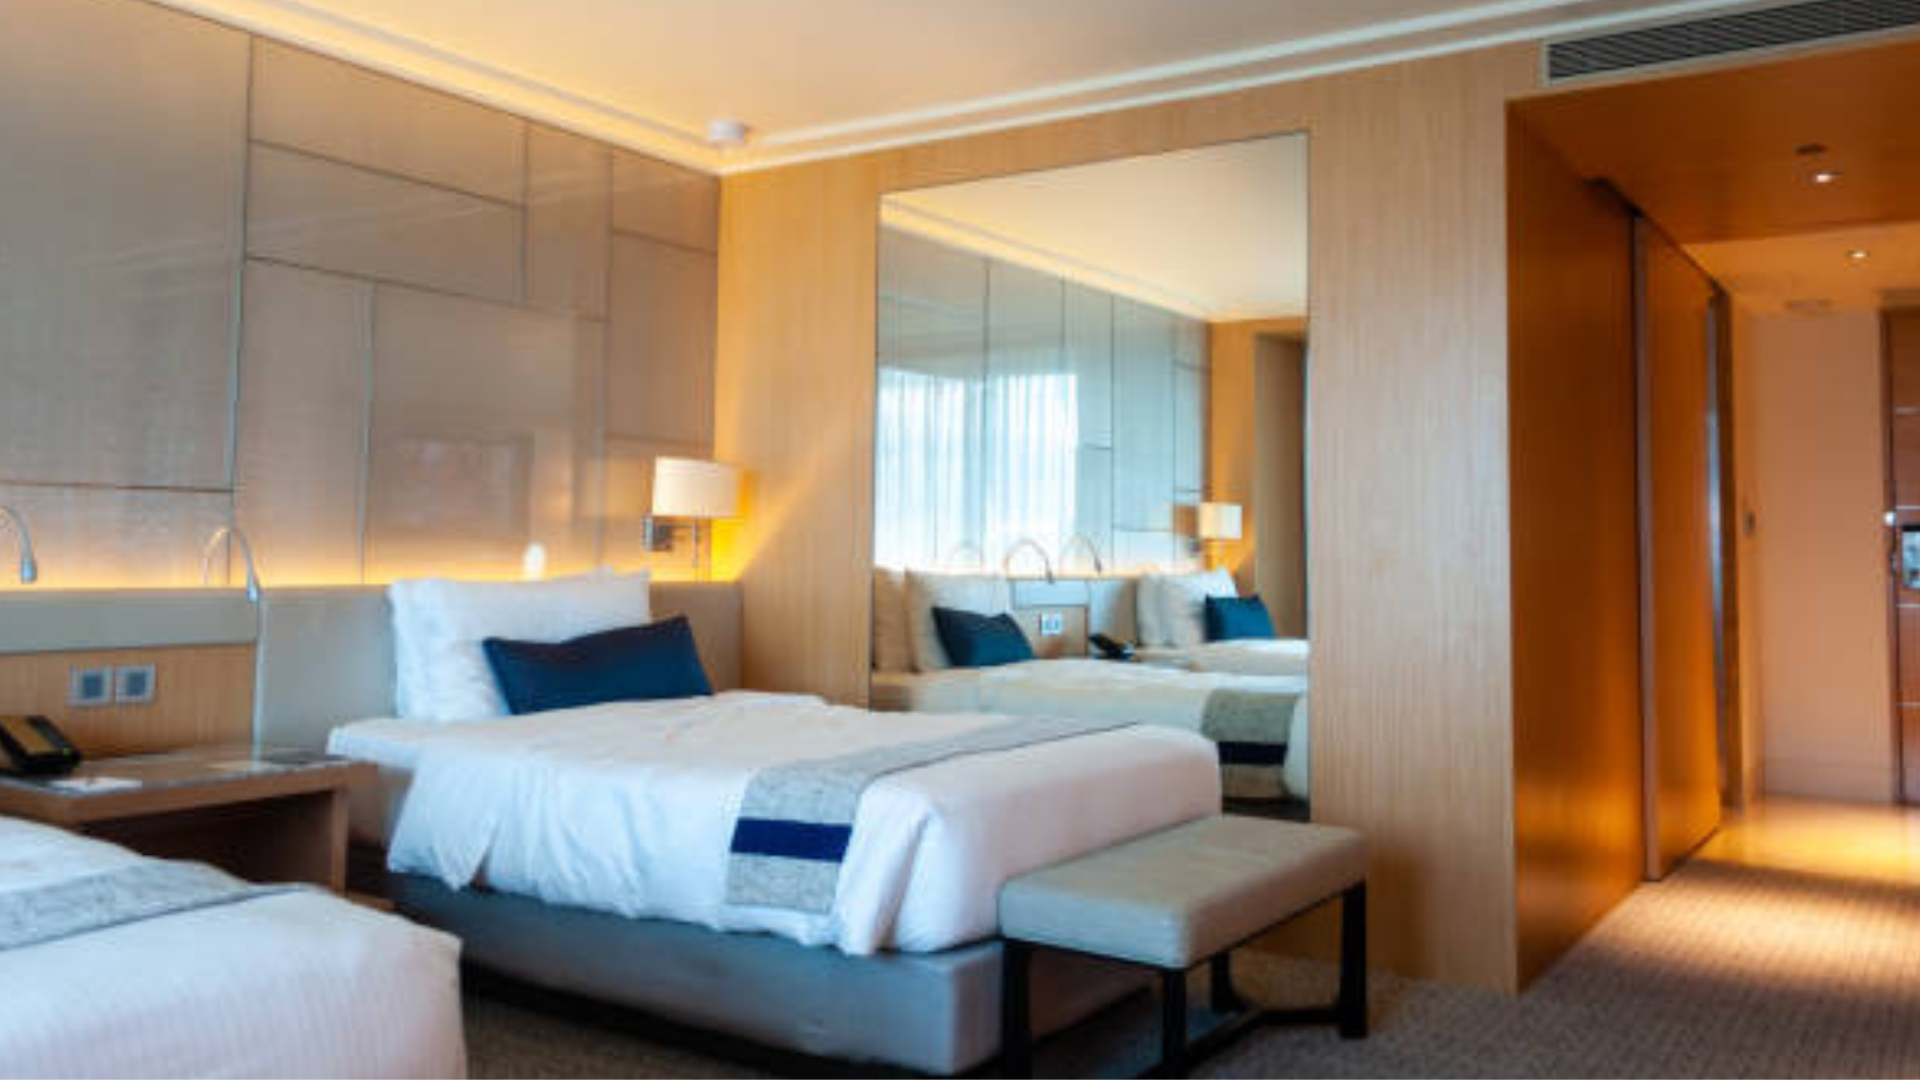 Vì sao khi nhận phòng khách sạn bạn nên kiểm tra gầm giường? Vì động tác này giúp đảm bảo an toàn cho bạn. (Ảnh: Istock)